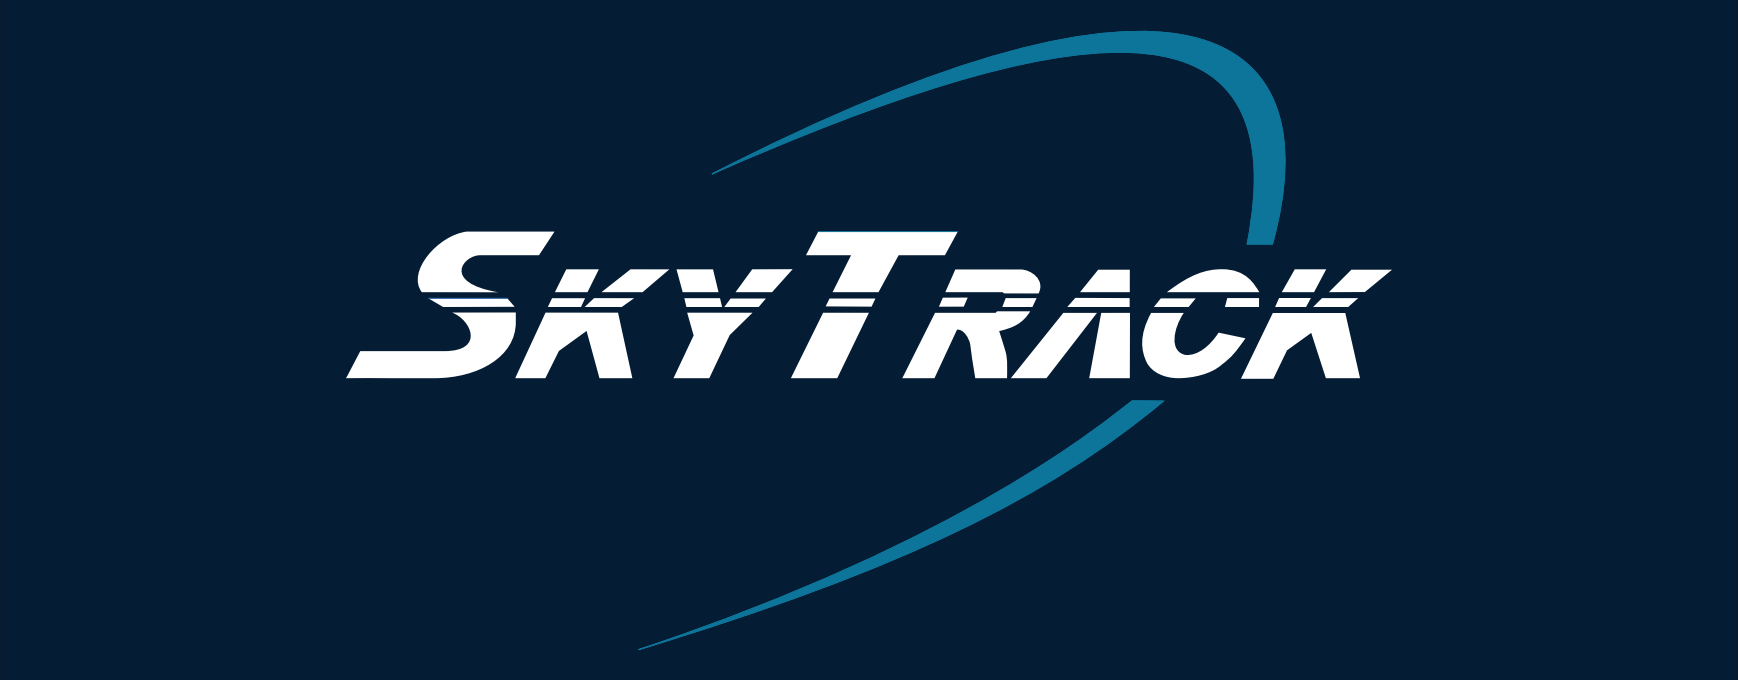 images/o-nama/SkyTrack_logo.png